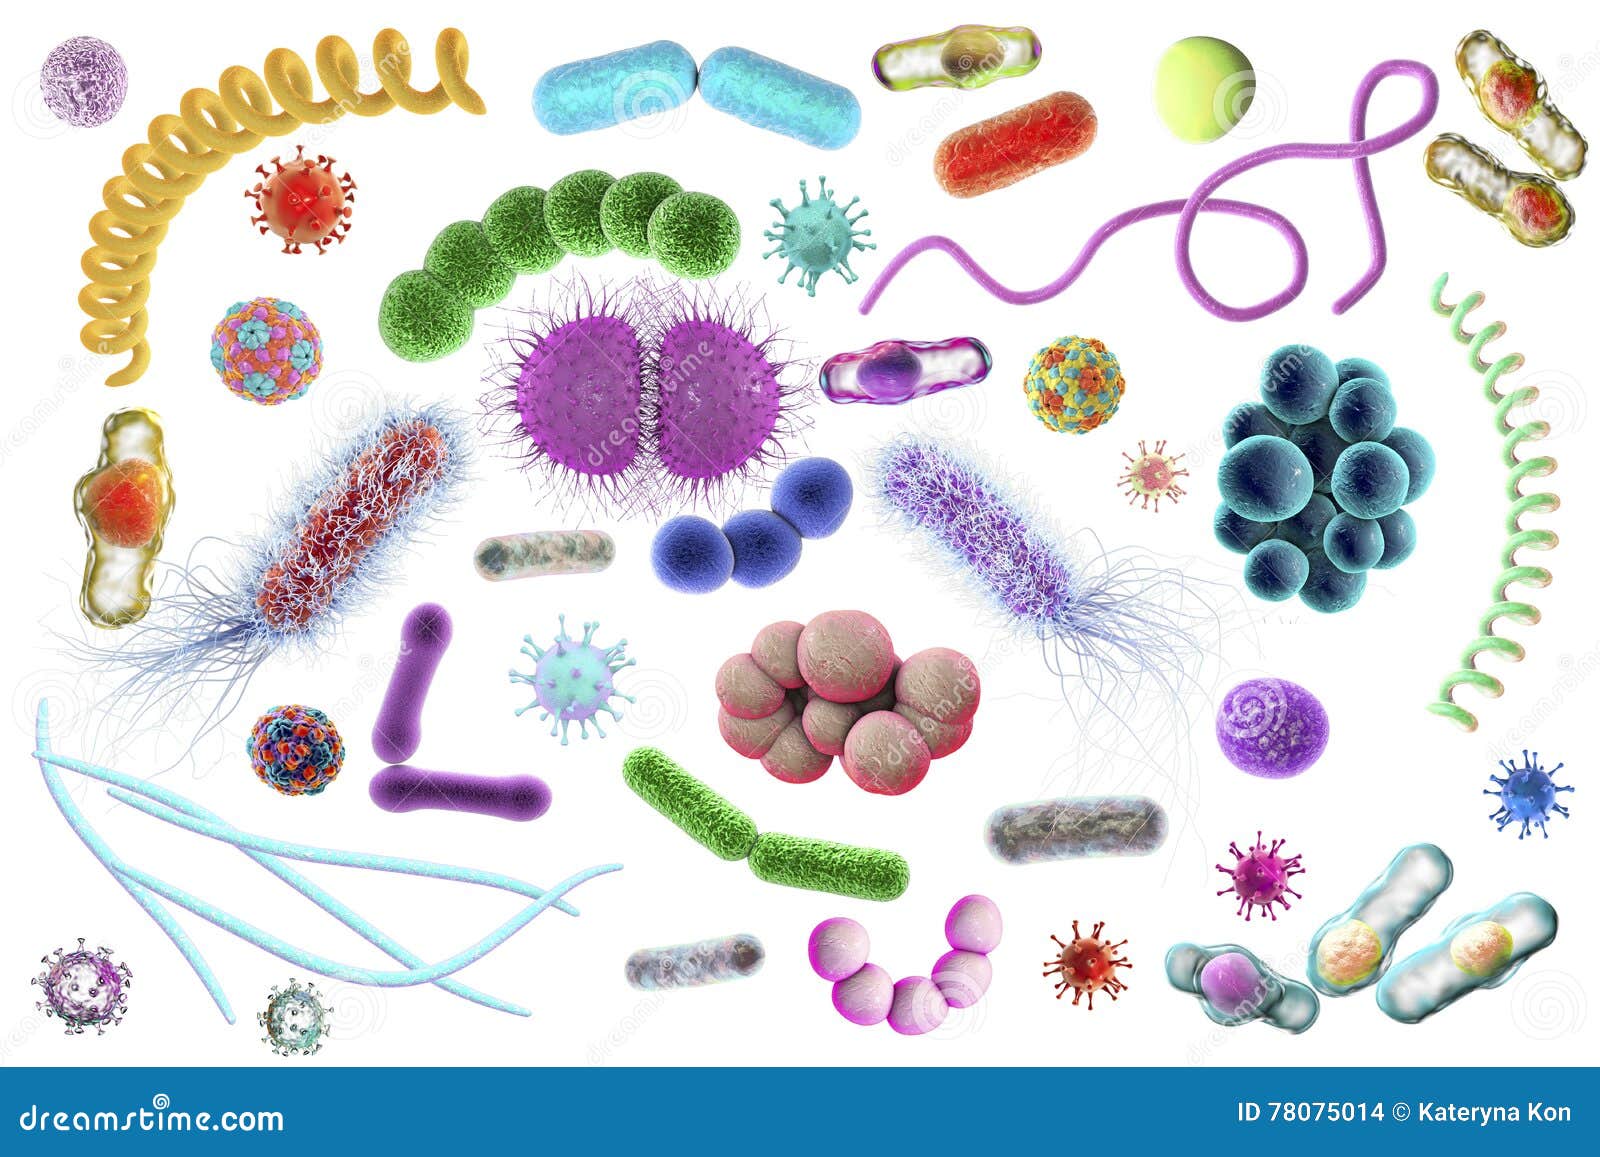 Организменные бактерии. Микробы различных видов и форм. Разные бактерии. Разные формы бактерий. Разнообразные формы бактерий.